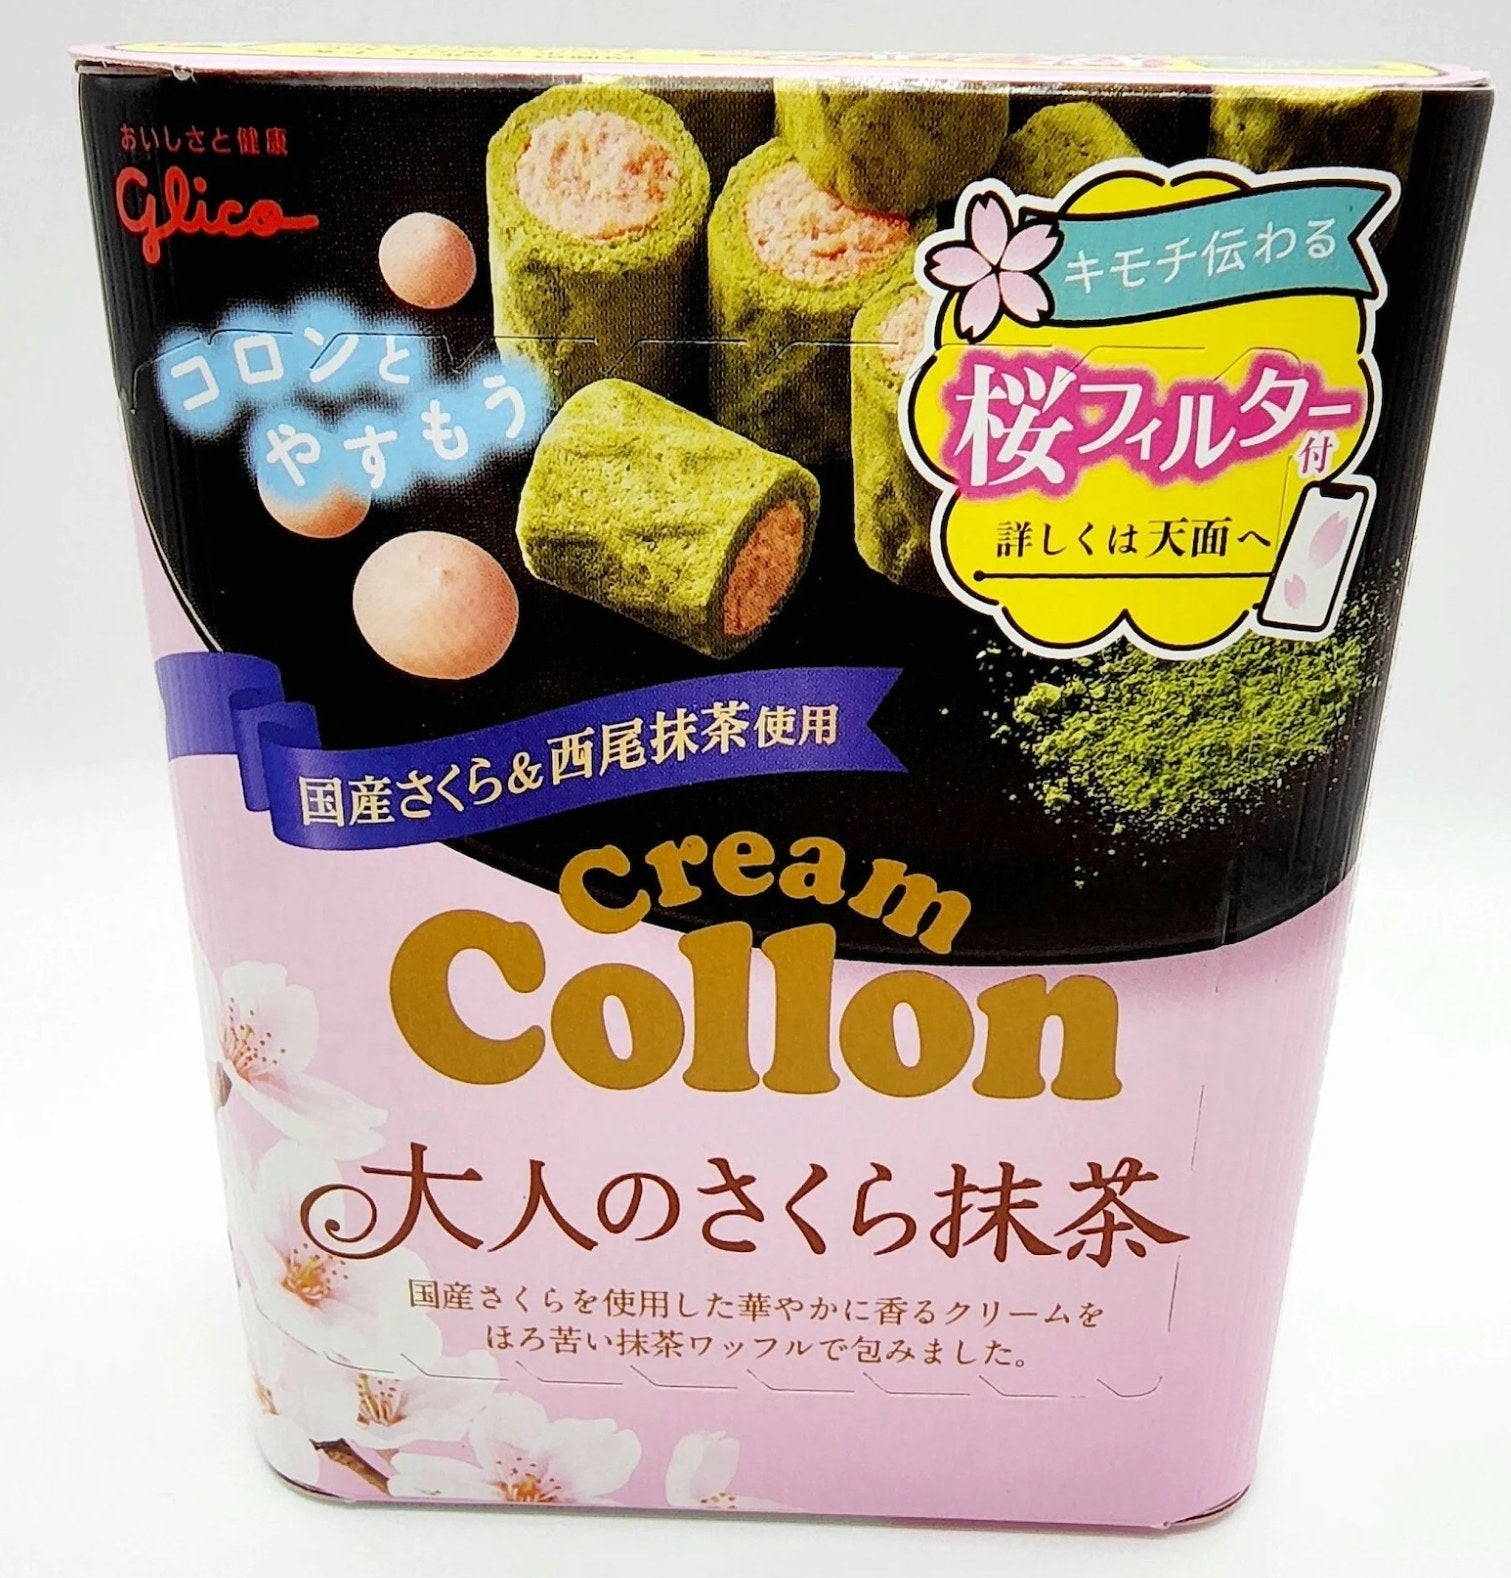 Glico Collon Biscuit Roll